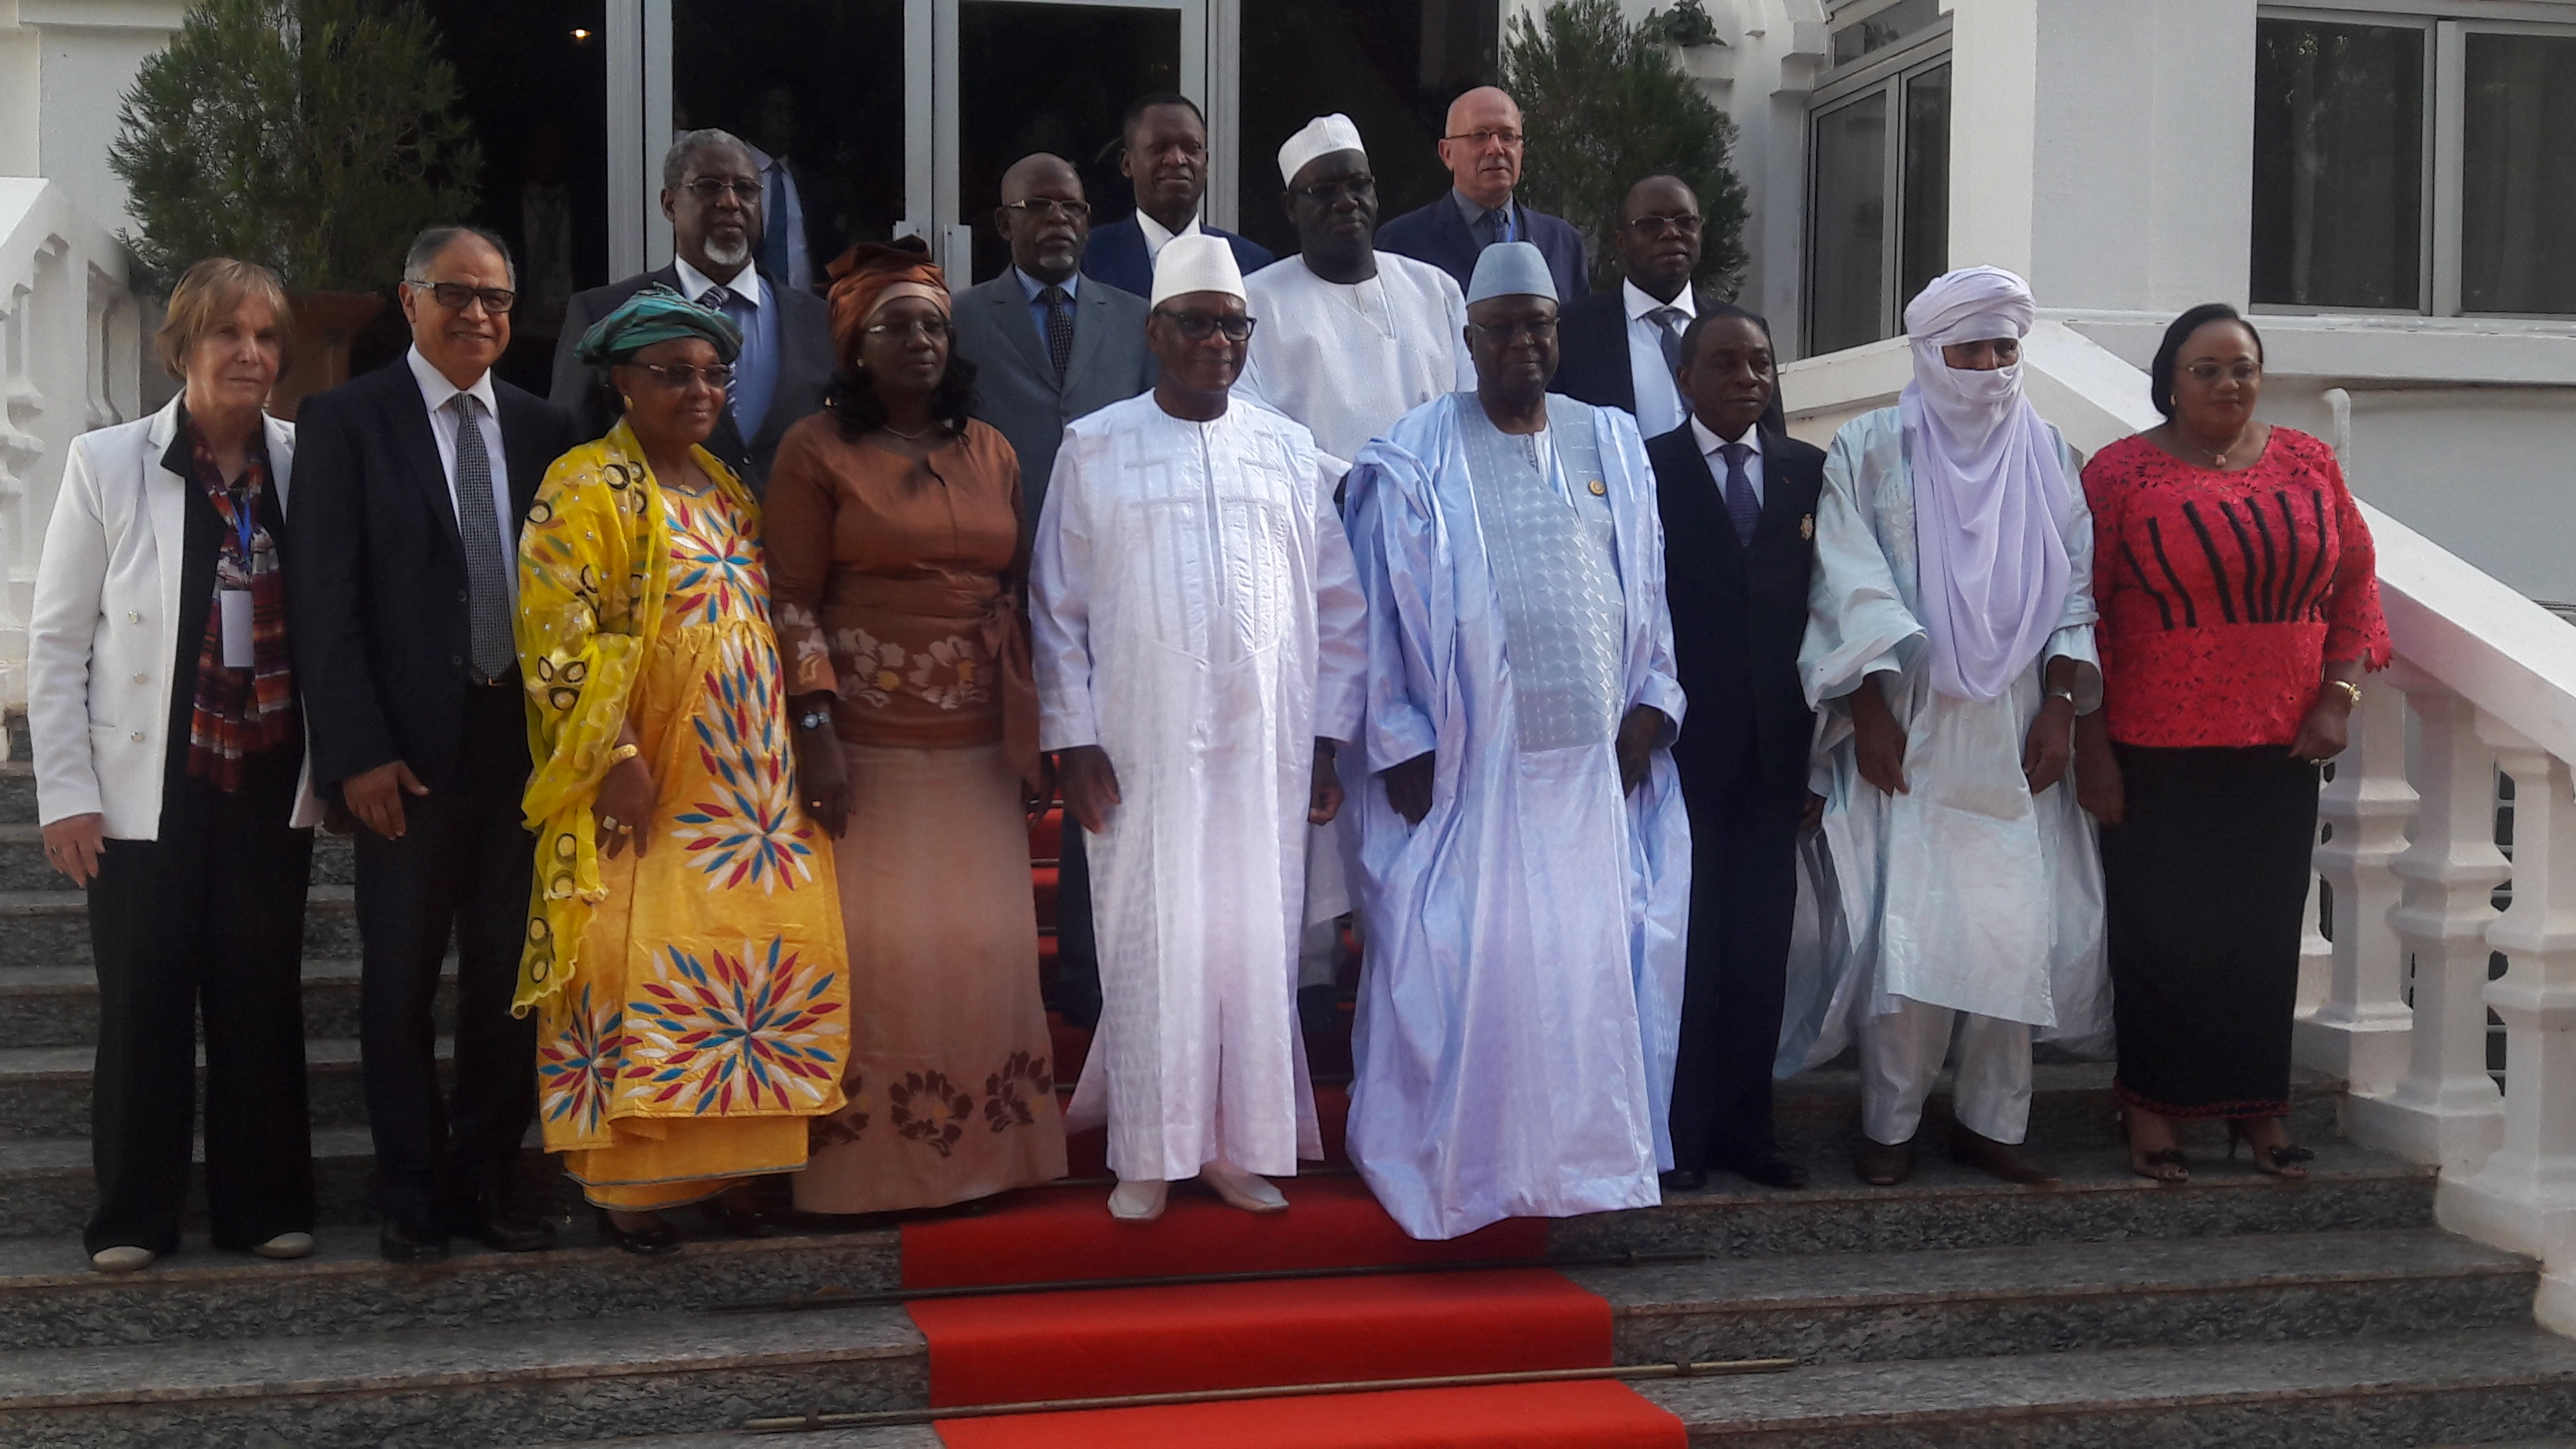 AG de l'Ucesa au Mali, le Sénégal honoré : Madame Aminata Tall élue Présidente d'honneur 